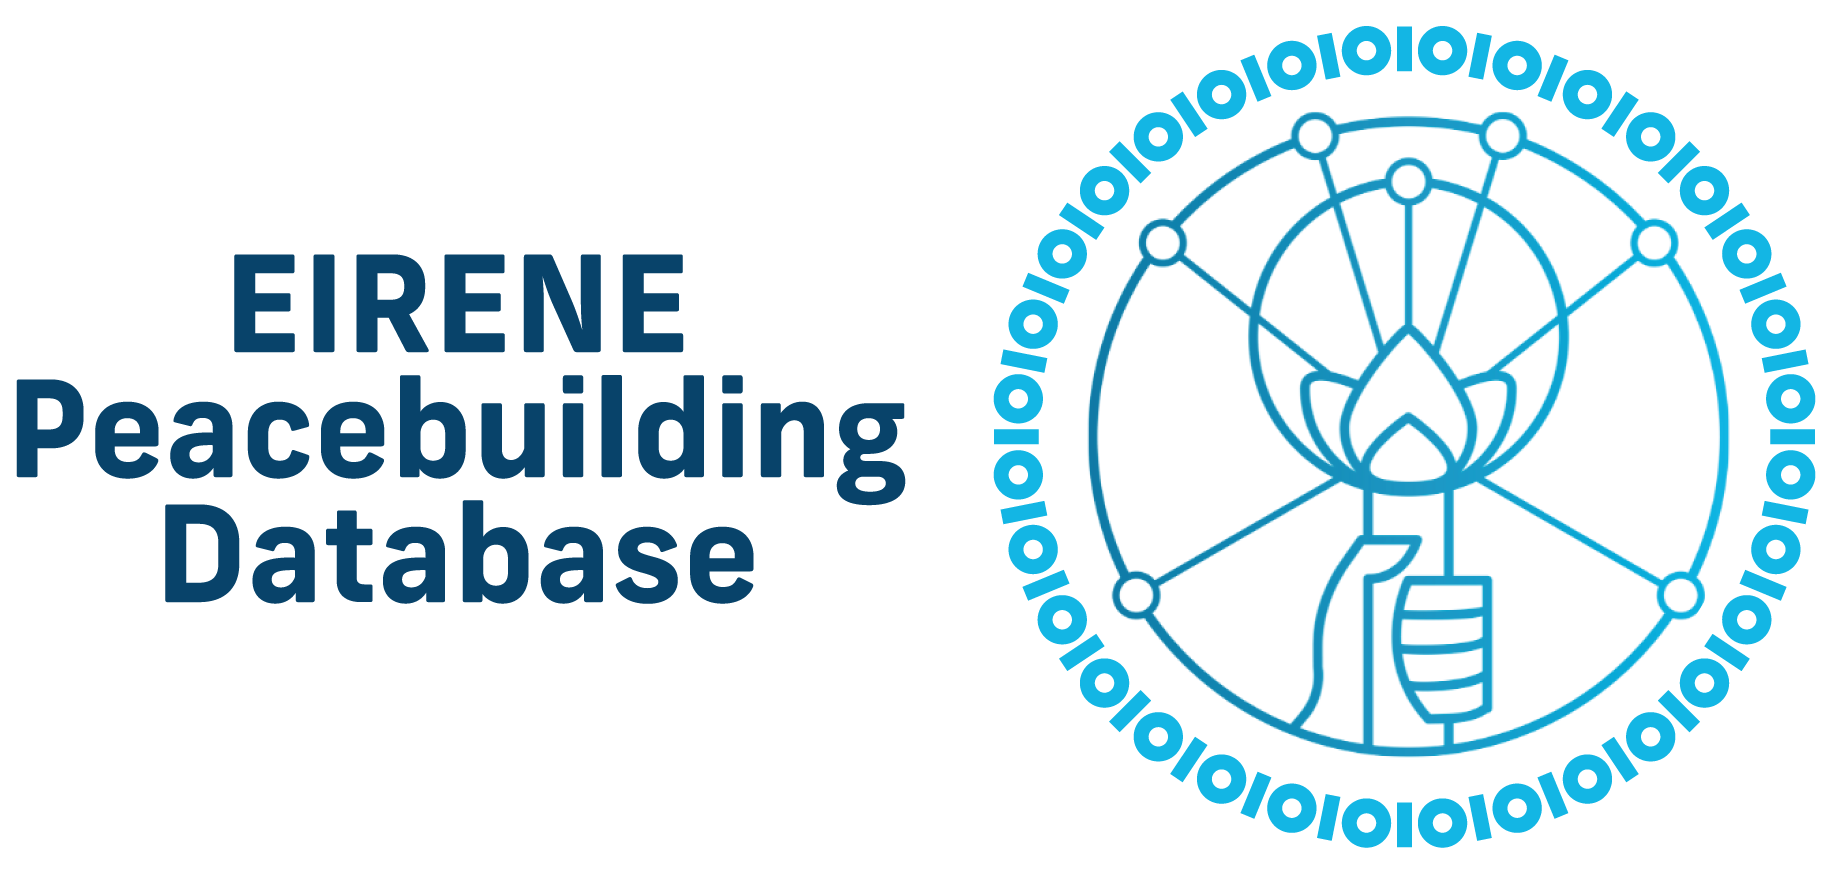 EIRENE Peacebuilding Database